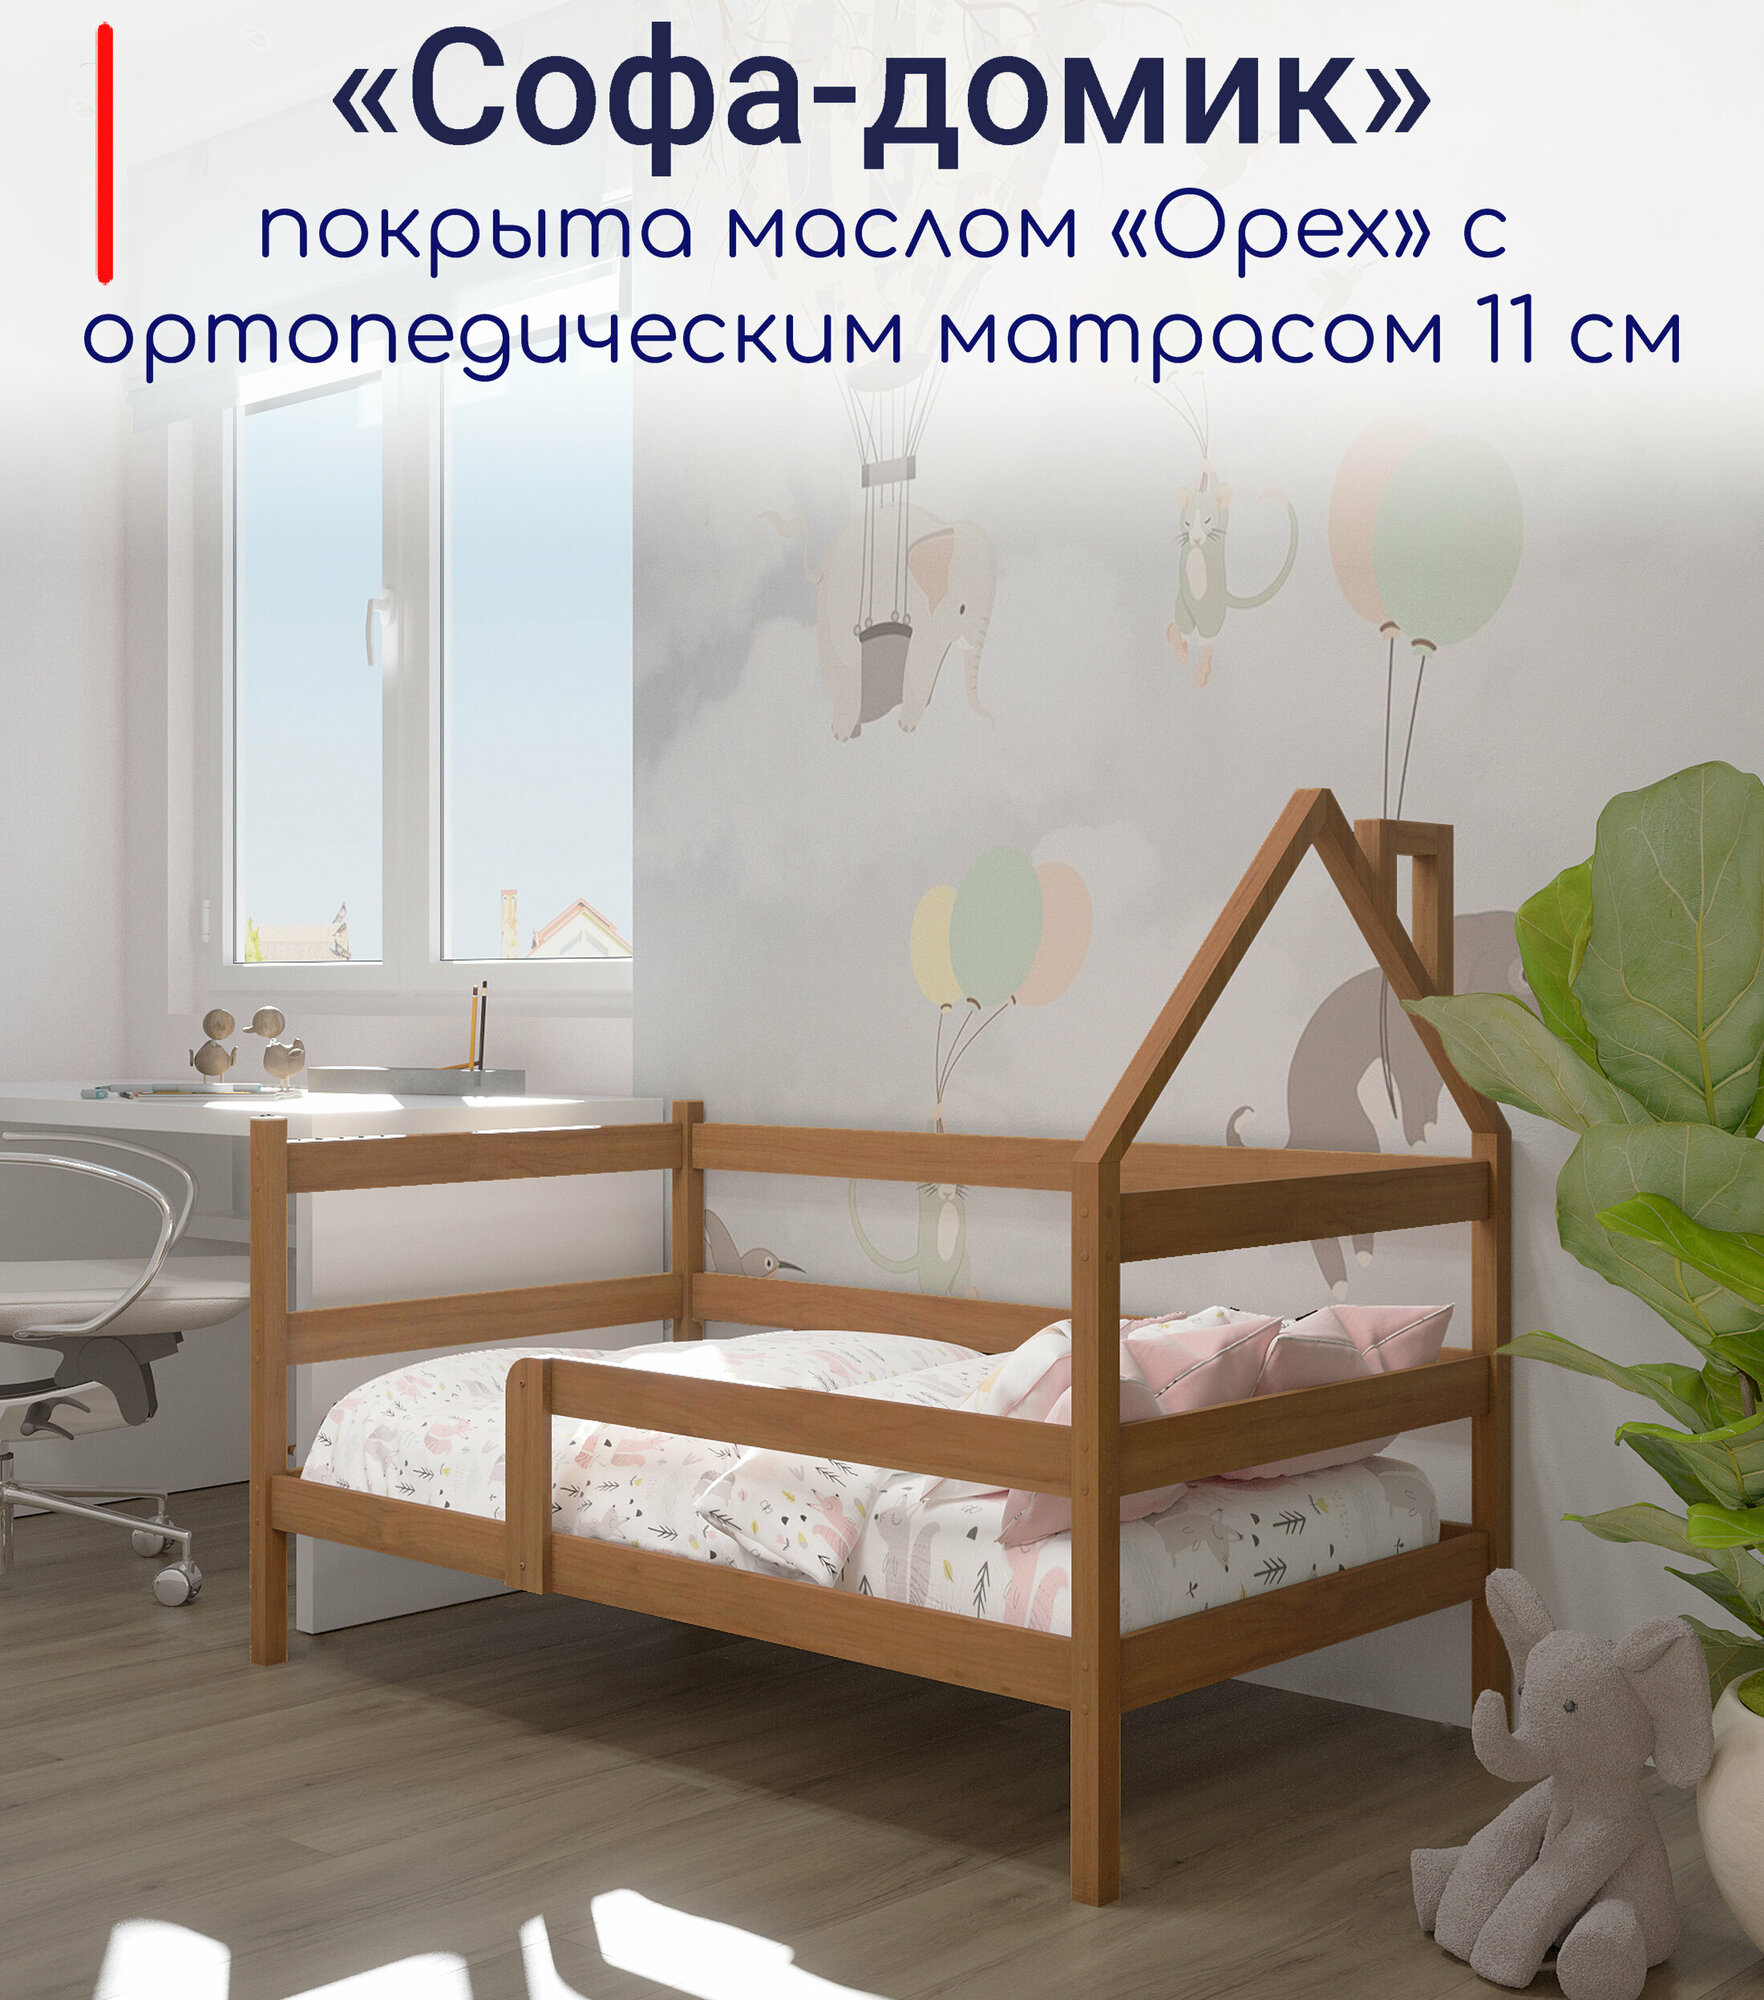 Кровать детская, подростковая "Софа-домик", спальное место 180х90, в комплекте с ортопедическим матрасом, масло "Орех", из массива